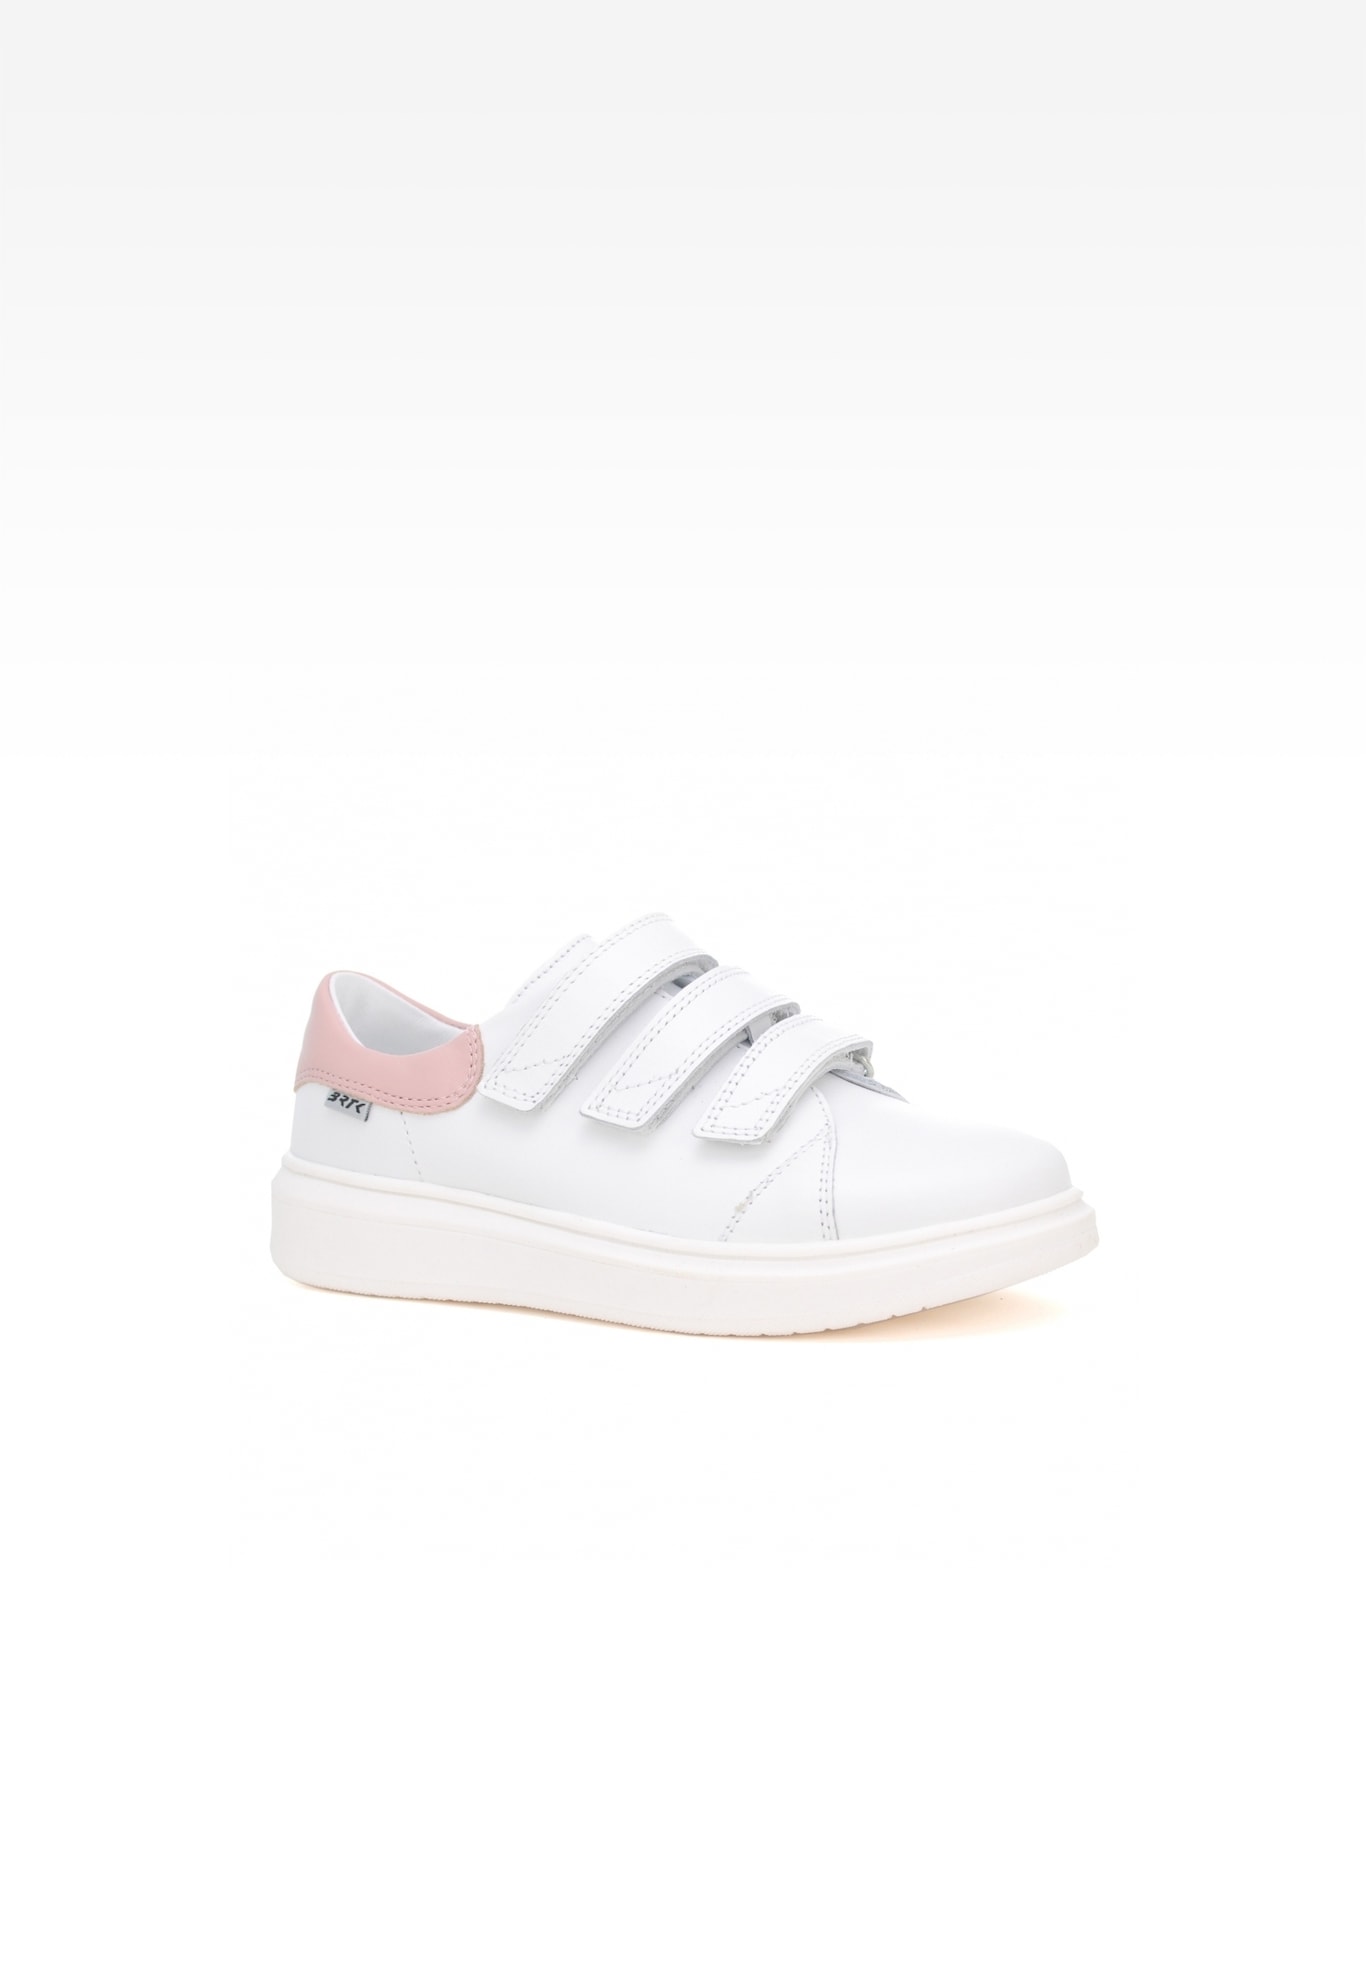 Sneakers BARTEK W-75220/B87, dla dziewcząt, biały